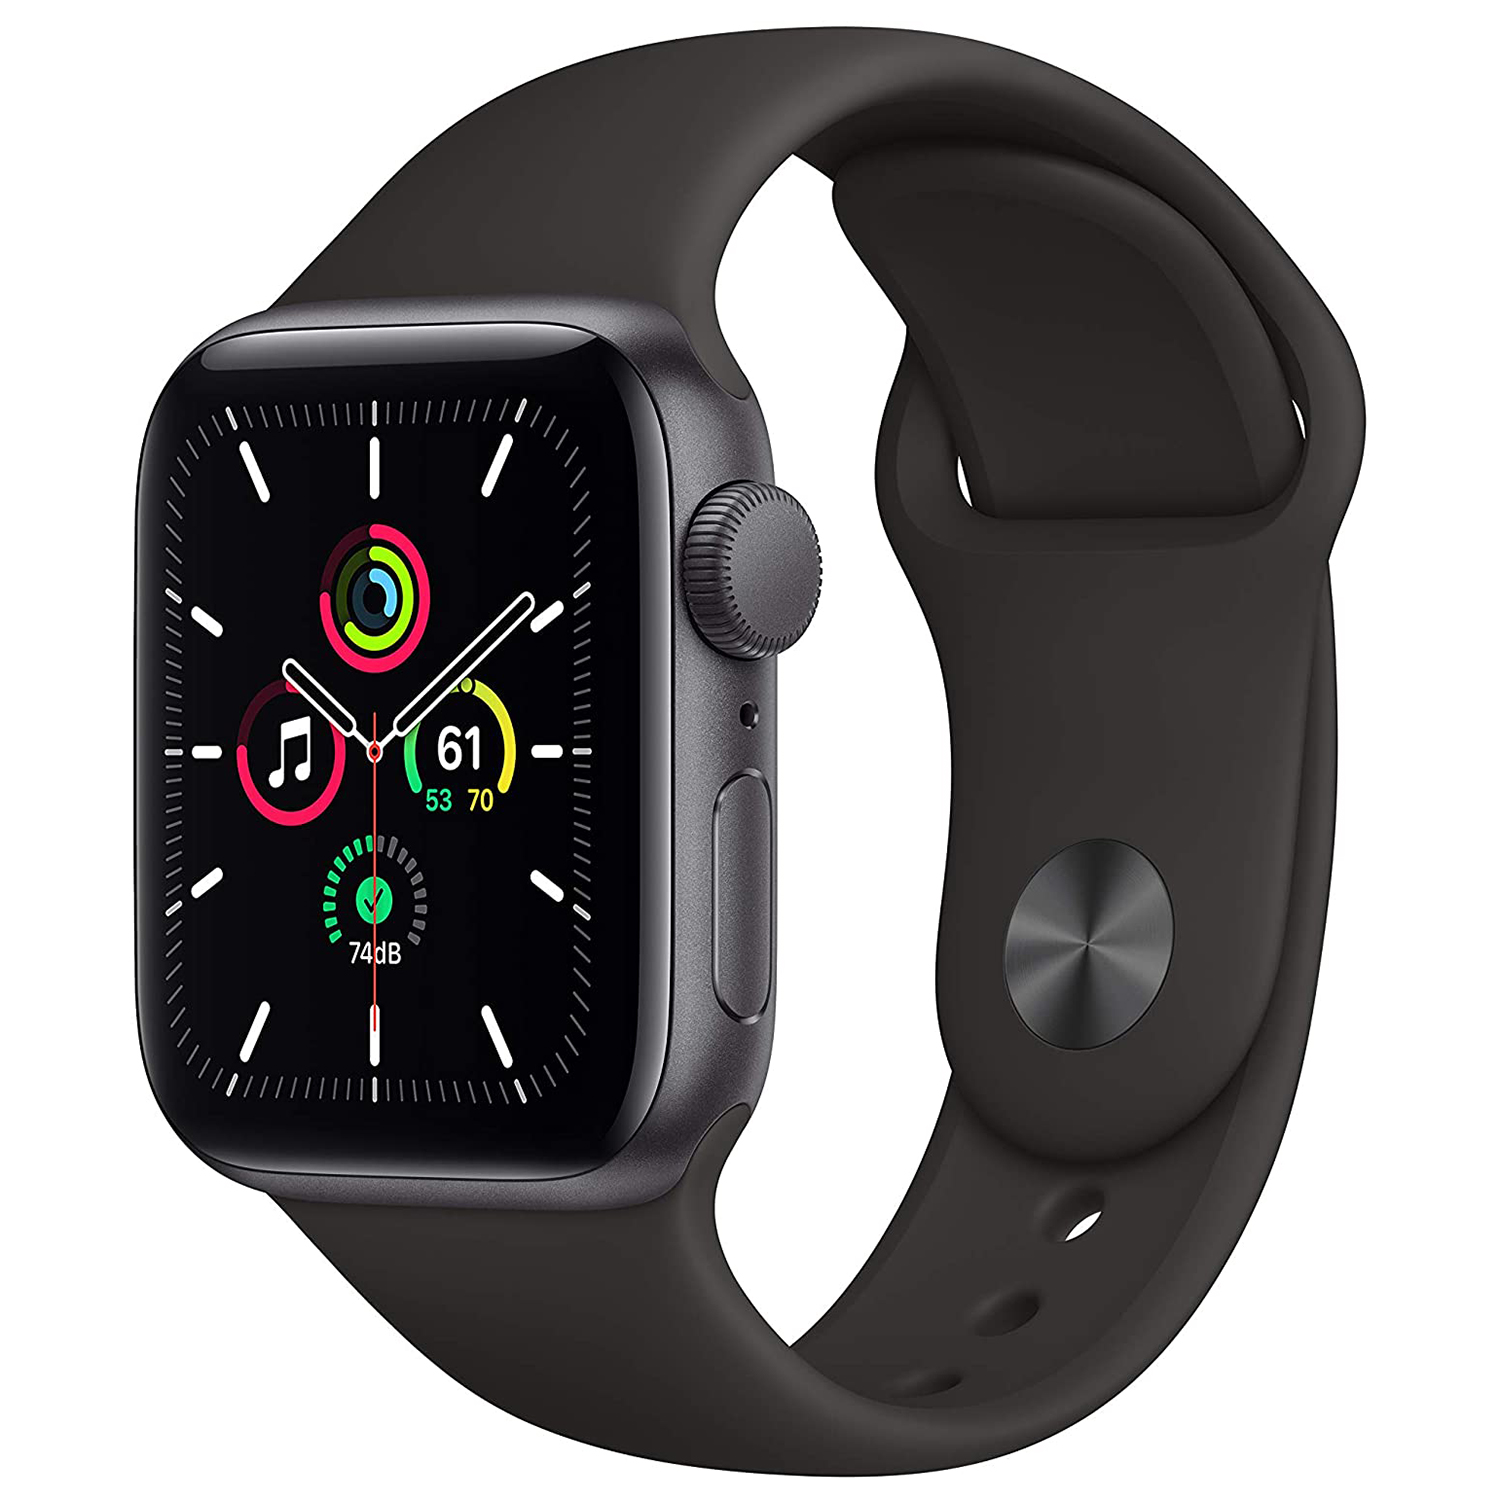 Best All-Around Smartwatch for Kids: Apple Watch SE